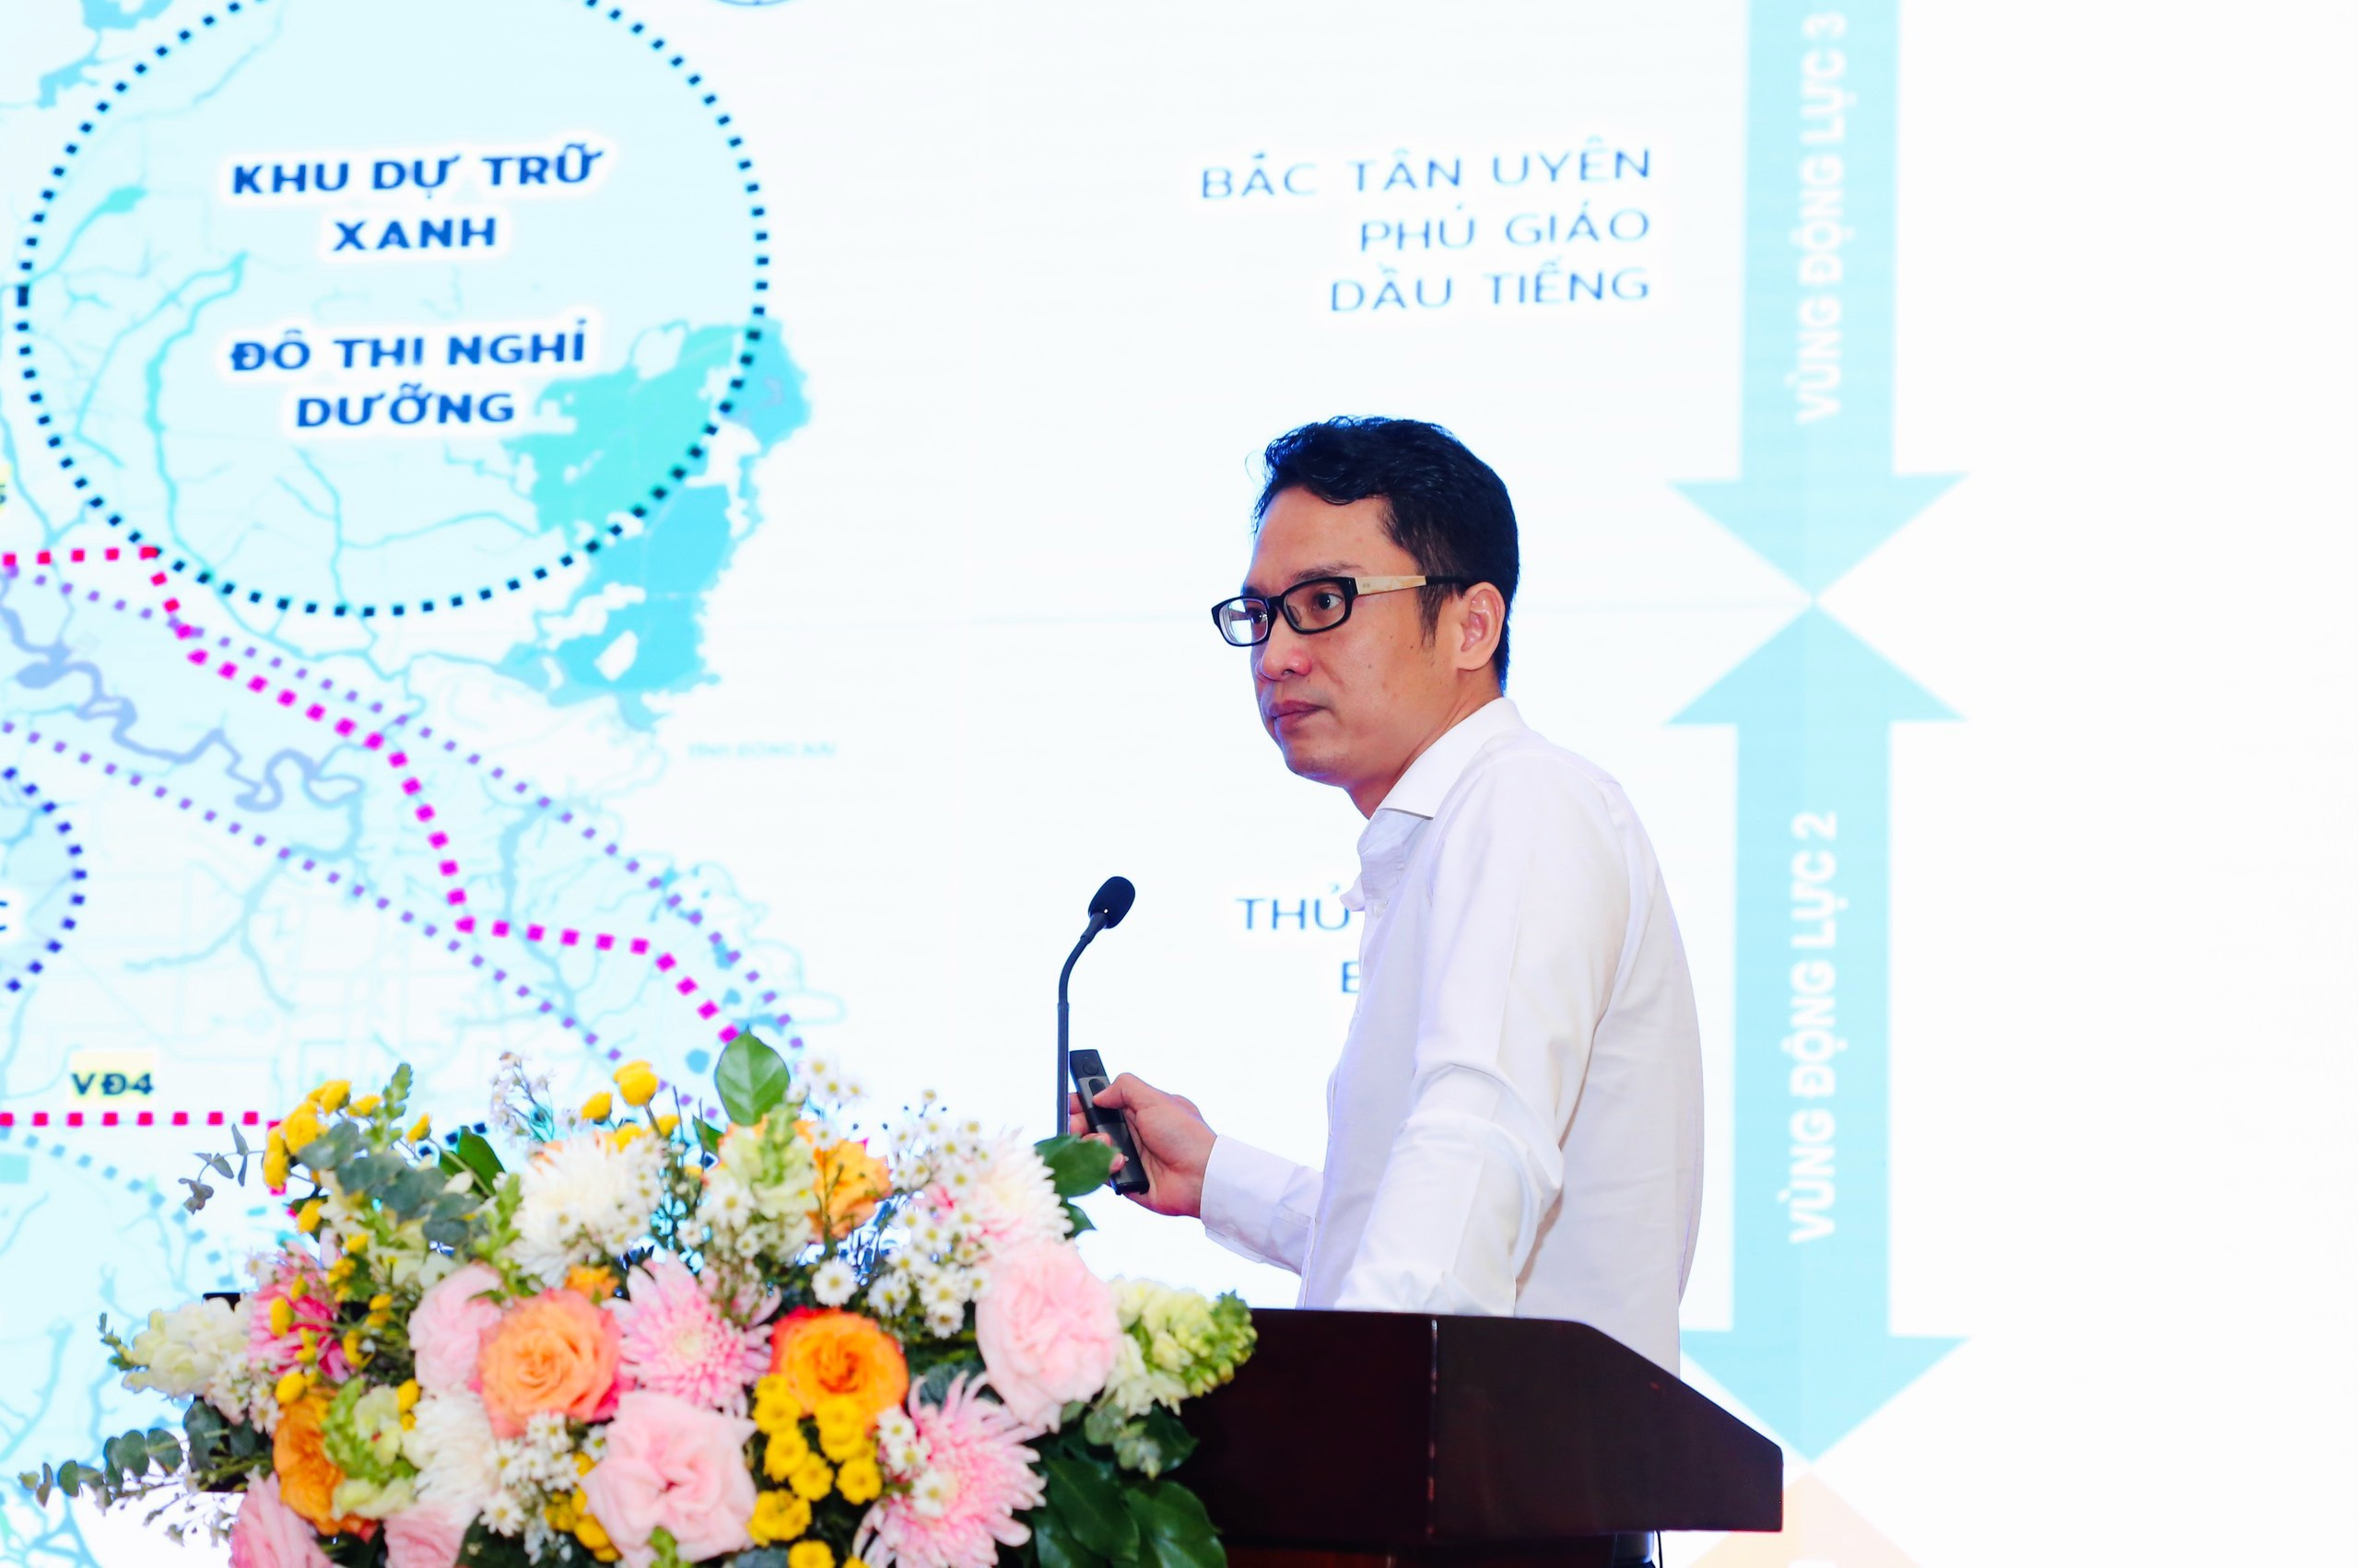 Ông Nguyễn Hồng Hải – Kiến trúc sư trưởng, Tổng Công ty Becamex IDC có chia sẻ rất ấn tượng về Định hướng quy hoạch TDTT trong tổng thể Quy hoạch tỉnh Bình Dương thời kỳ đến 2030, tầm nhìn đến 2050